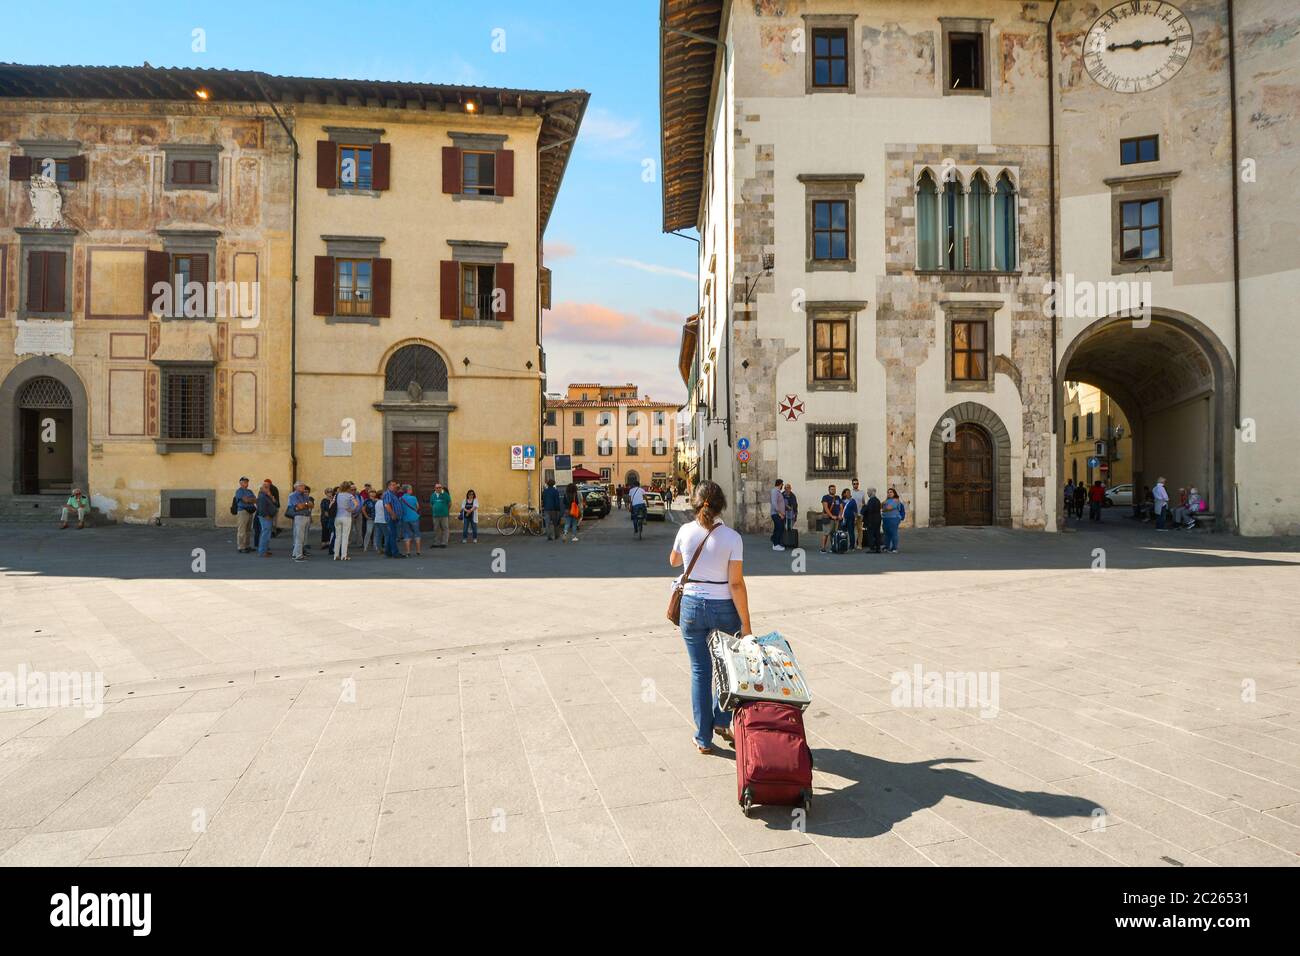 Eine weibliche Touristen, die alleine unterwegs ist und einen Gepäckkoffer auf Rädern im historischen Zentrum von Pisa, Italien, zieht. Stockfoto